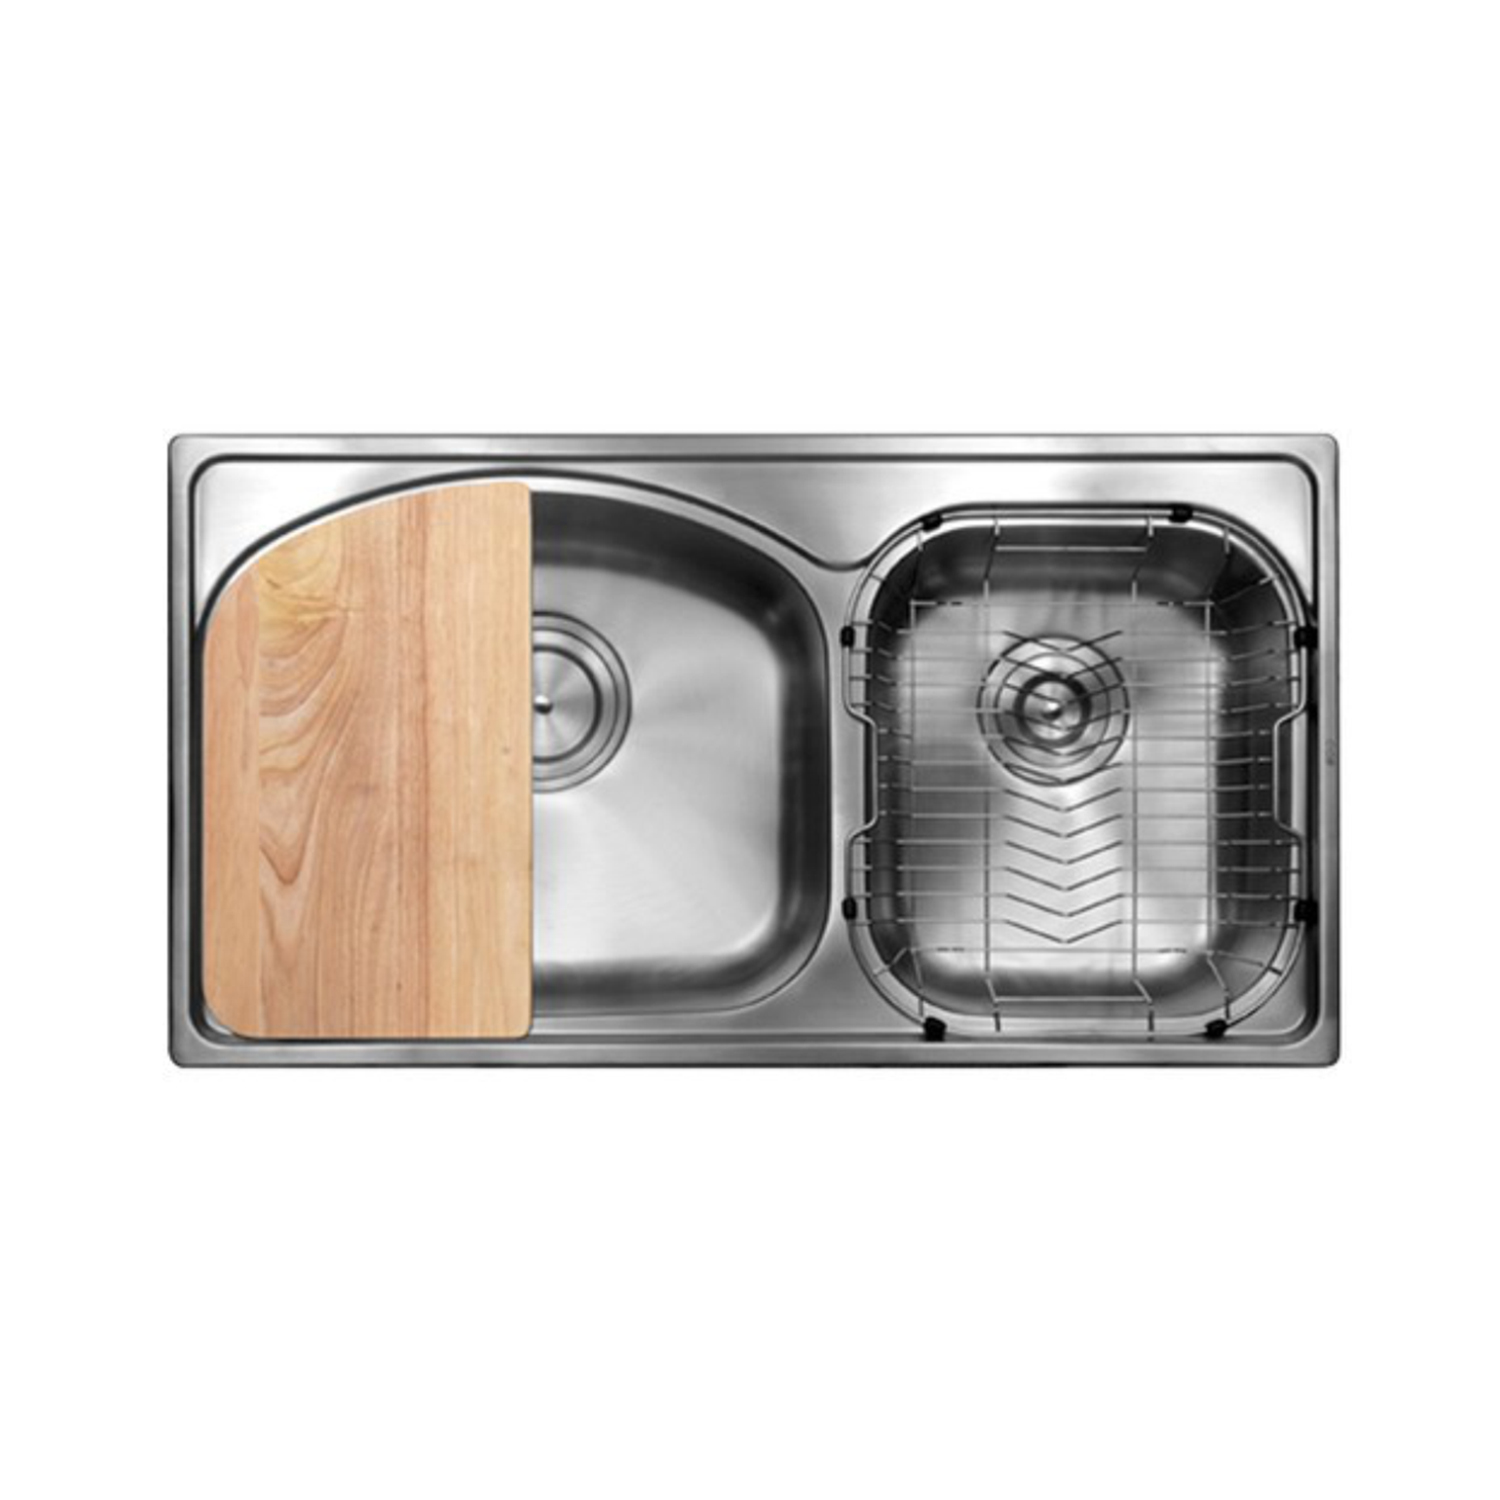 Paket Komplit Kitchen Sink CGS Roma - Wastafel Dapur